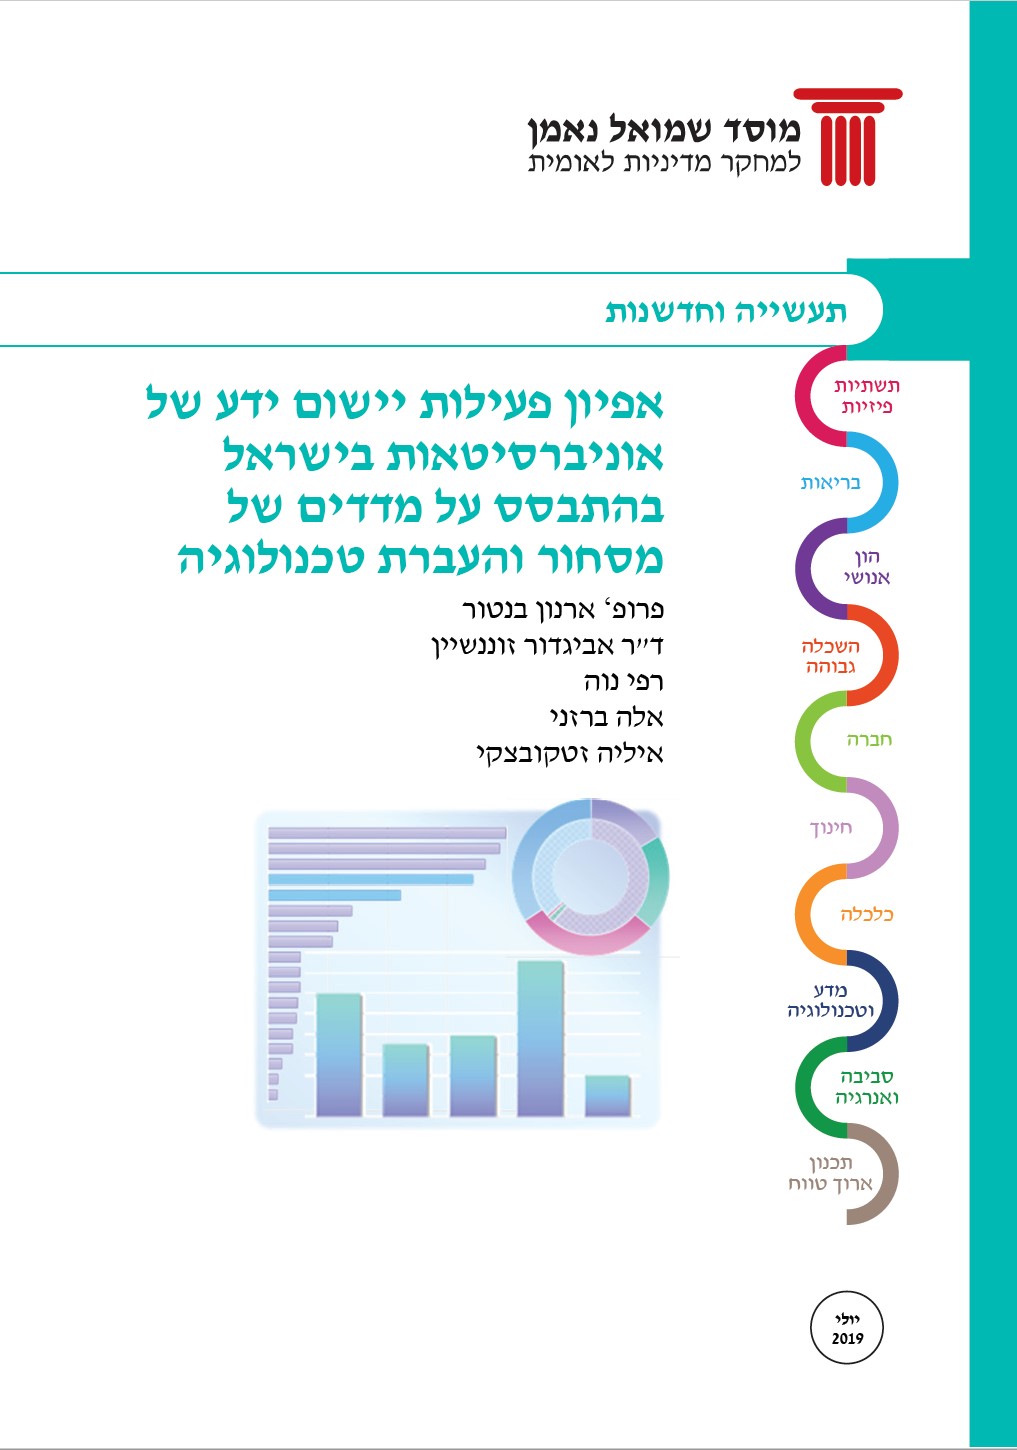 אפיון פעילות יישום ידע של אוניברסיטאות בישראל בהתבסס על מדדים של מסחור והעברת טכנולוגיה  